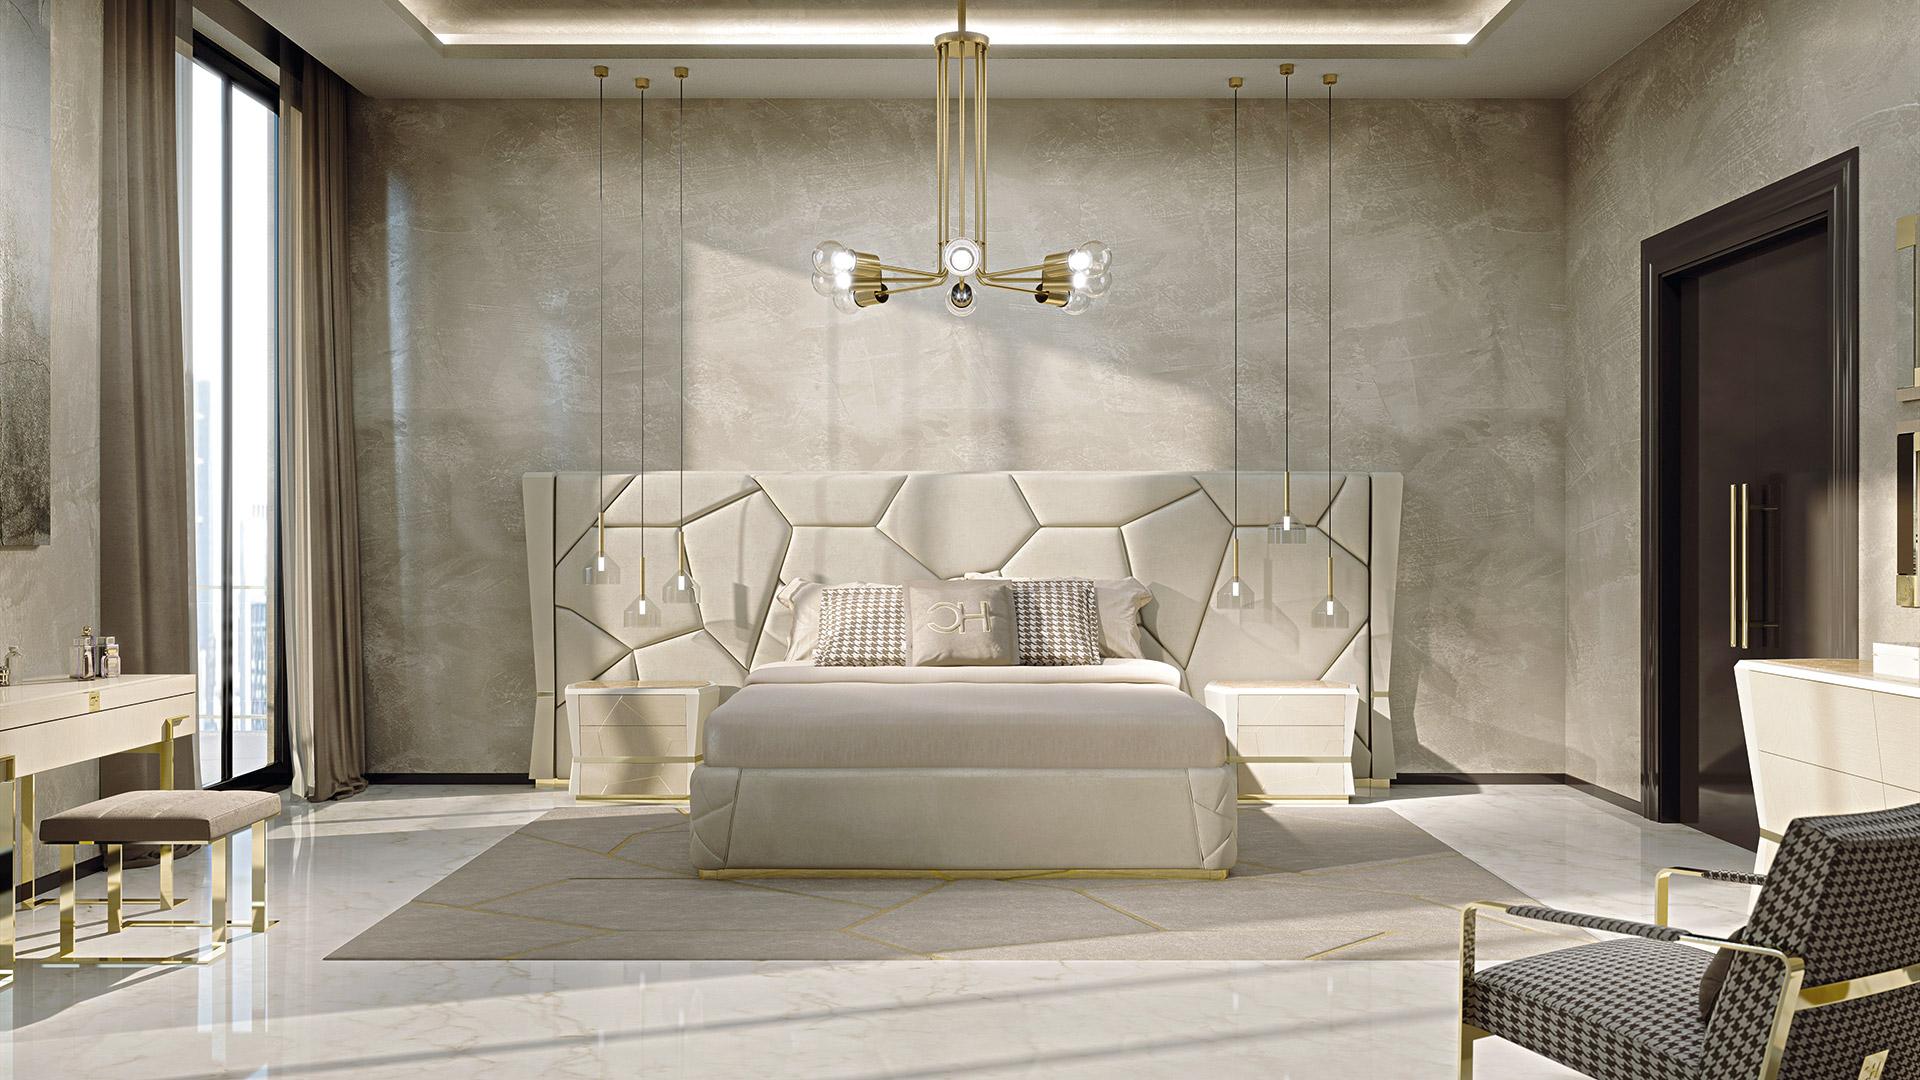 Gepolstertes Bett. Die Matratze misst 180 x 200 cm. Gekennzeichnet durch schöne rautenförmige Holzsäulen an den Seiten mit einem zentralen goldenen galvanischen Metallstreifen. Das Kopfteil wird durch erstaunliche unregelmäßige Nähte